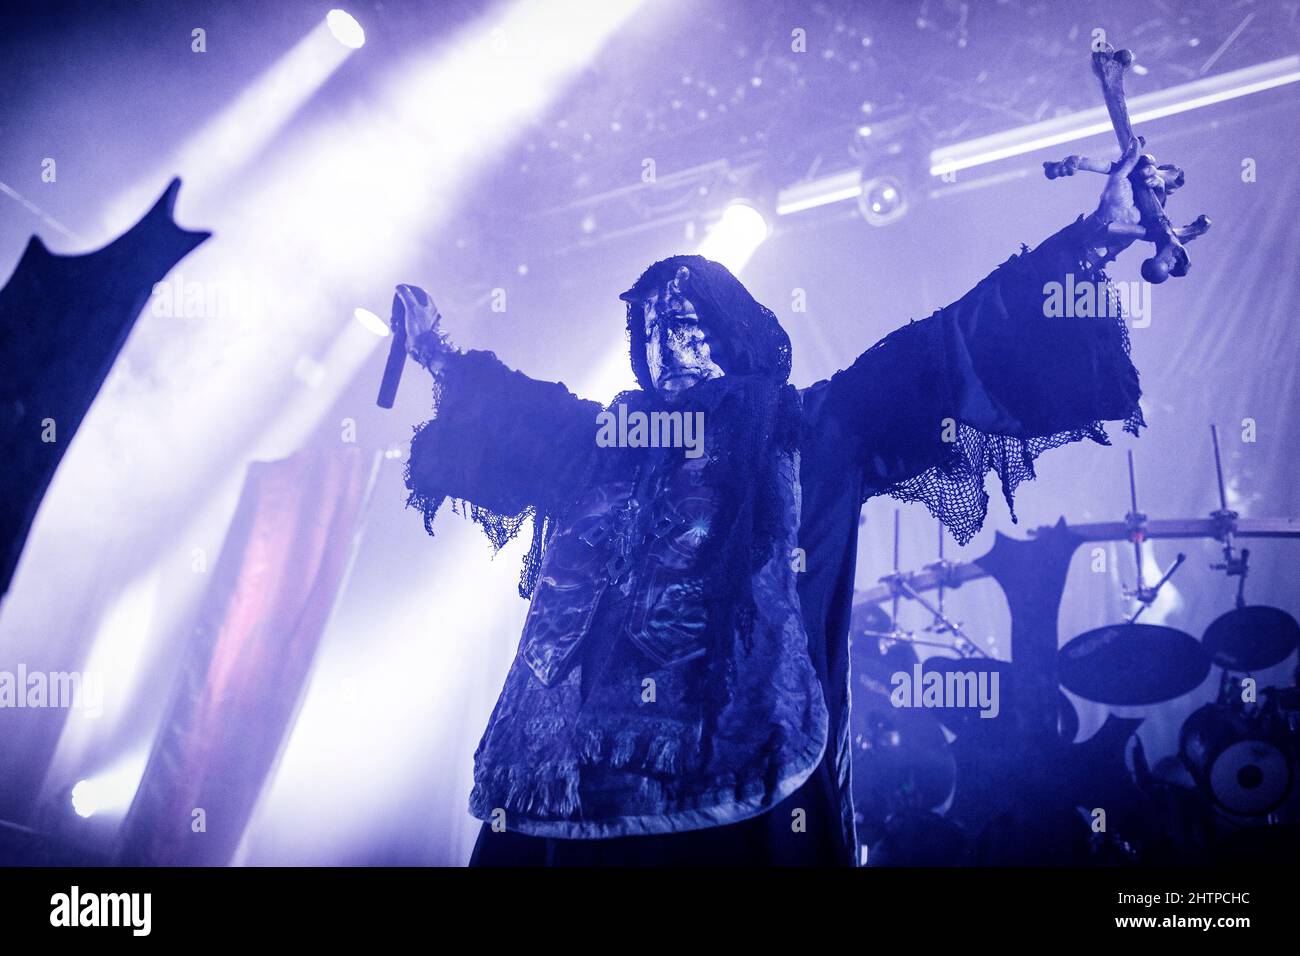 Oslo, Norwegen. 27., Februar 2022. Die norwegische Black Metal Band Mayhem spielt ein Live-Konzert im Rockefeller in Oslo. Hier ist Sänger Attila Csihar live auf der Bühne zu sehen. (Foto: Gonzales Photo - Terje Dokken). Stockfoto